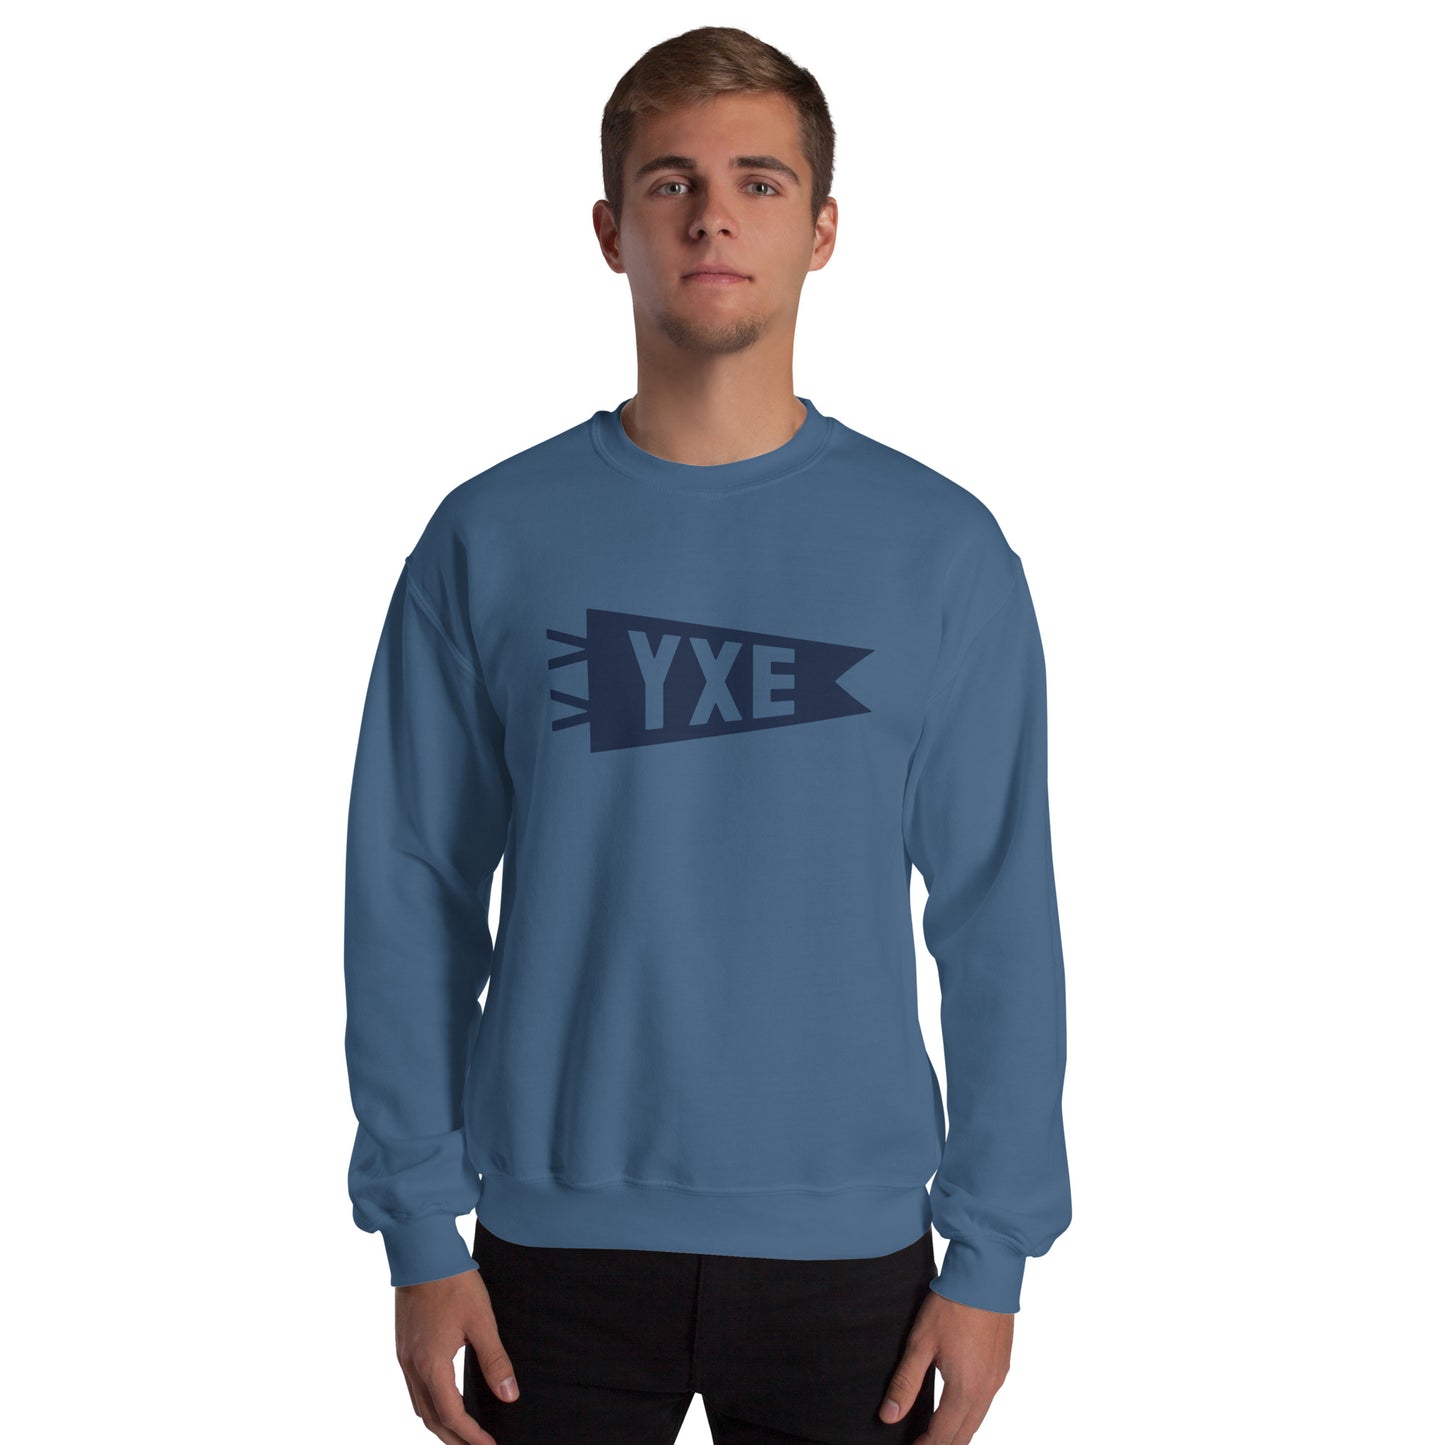 Airport Code Sweatshirt - Navy Blue Graphic • YXE Saskatoon • YHM Designs - Image 06